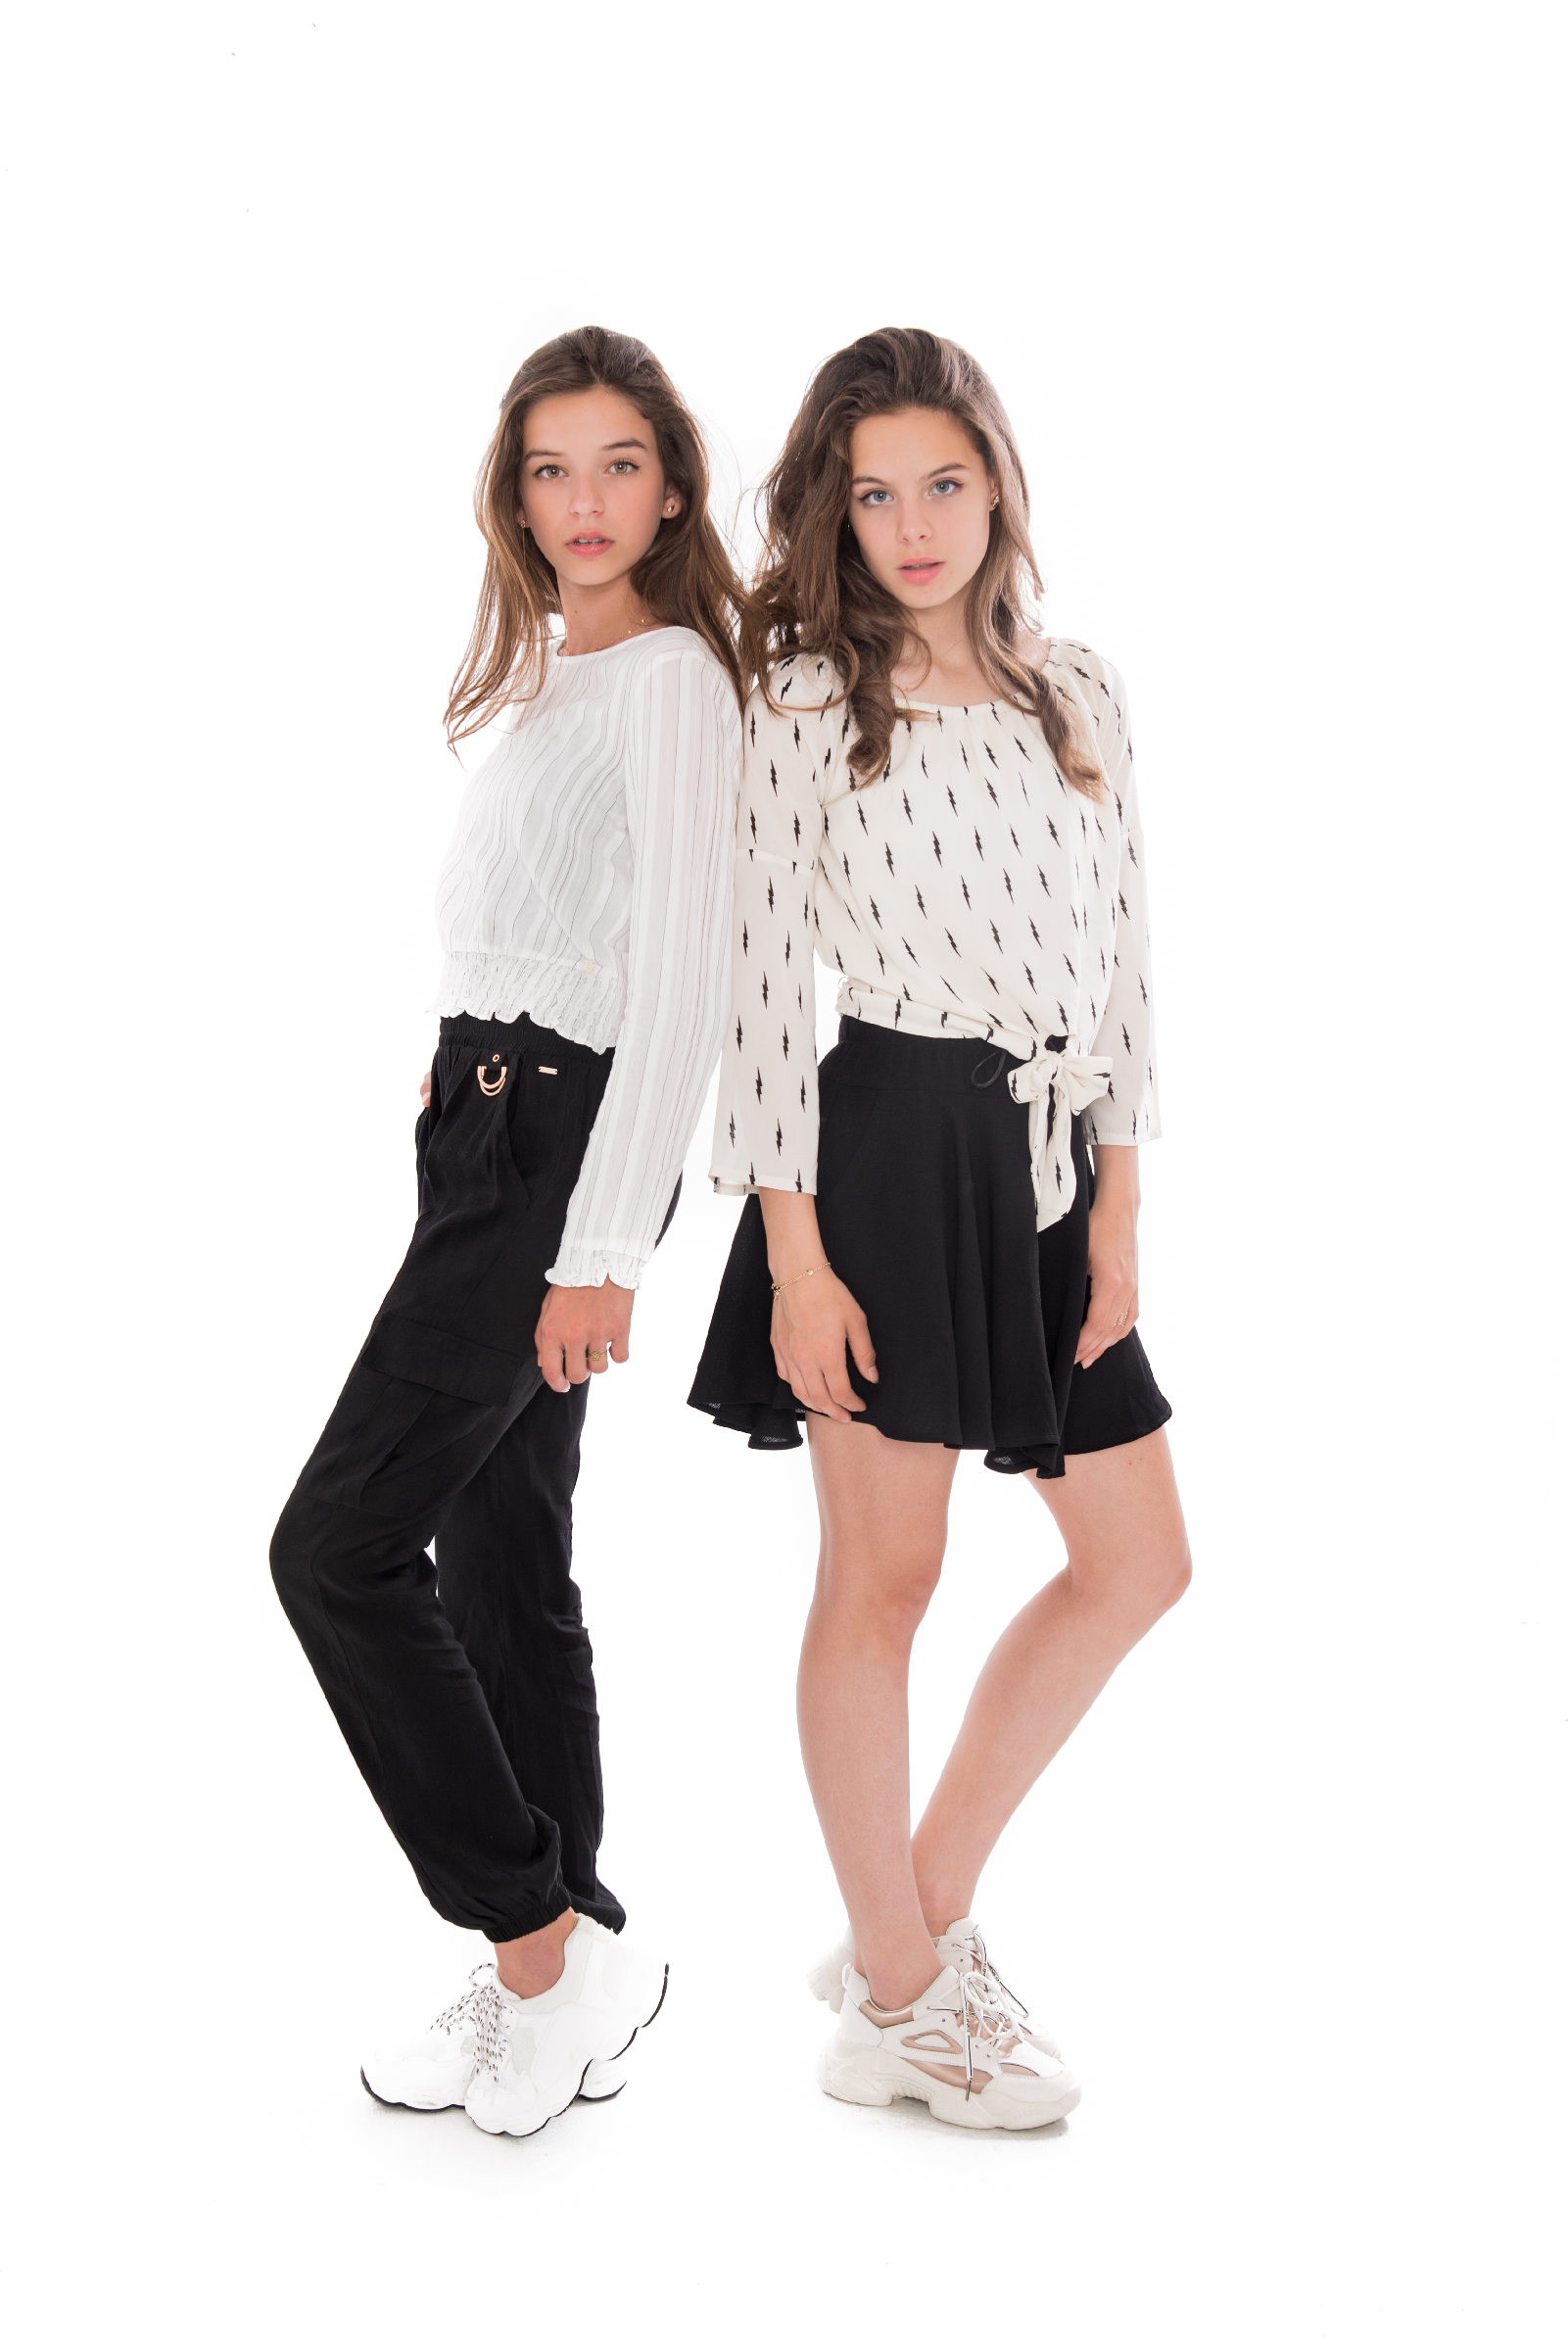 Meisjes Niene Skirt van Frankie & Lib in de kleur Black in maat 176.